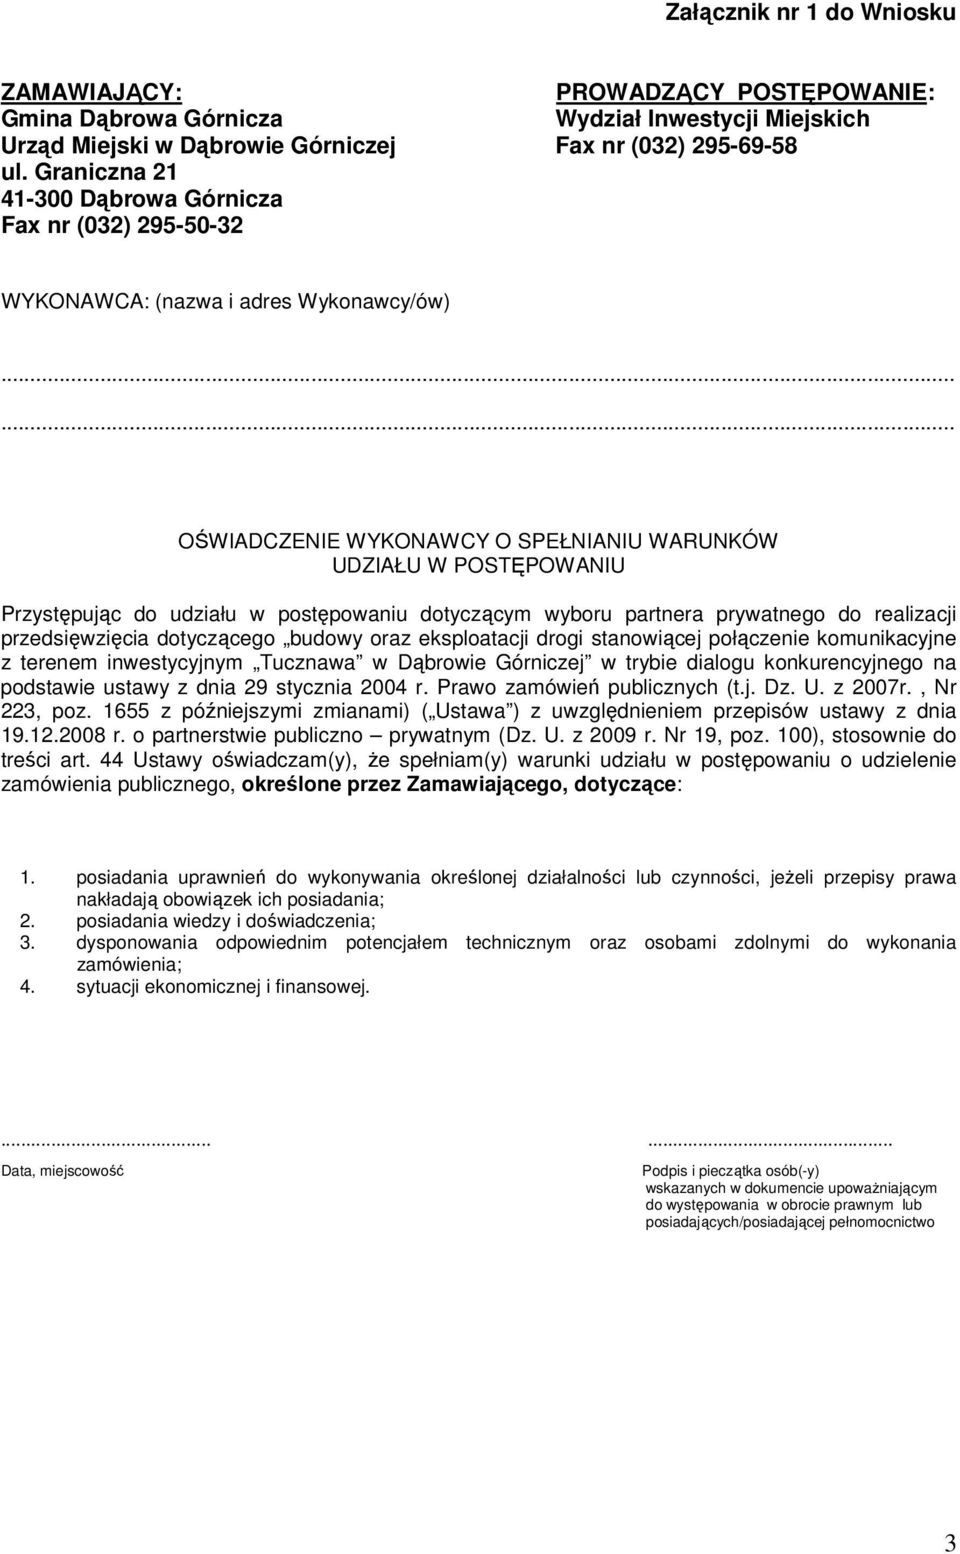 inwestycyjnym Tucznawa w Dąbrowie Górniczej w trybie dialogu konkurencyjnego na podstawie ustawy z dnia 29 stycznia 2004 r. Prawo zamówień publicznych (t.j. Dz. U. z 2007r., Nr 223, poz.